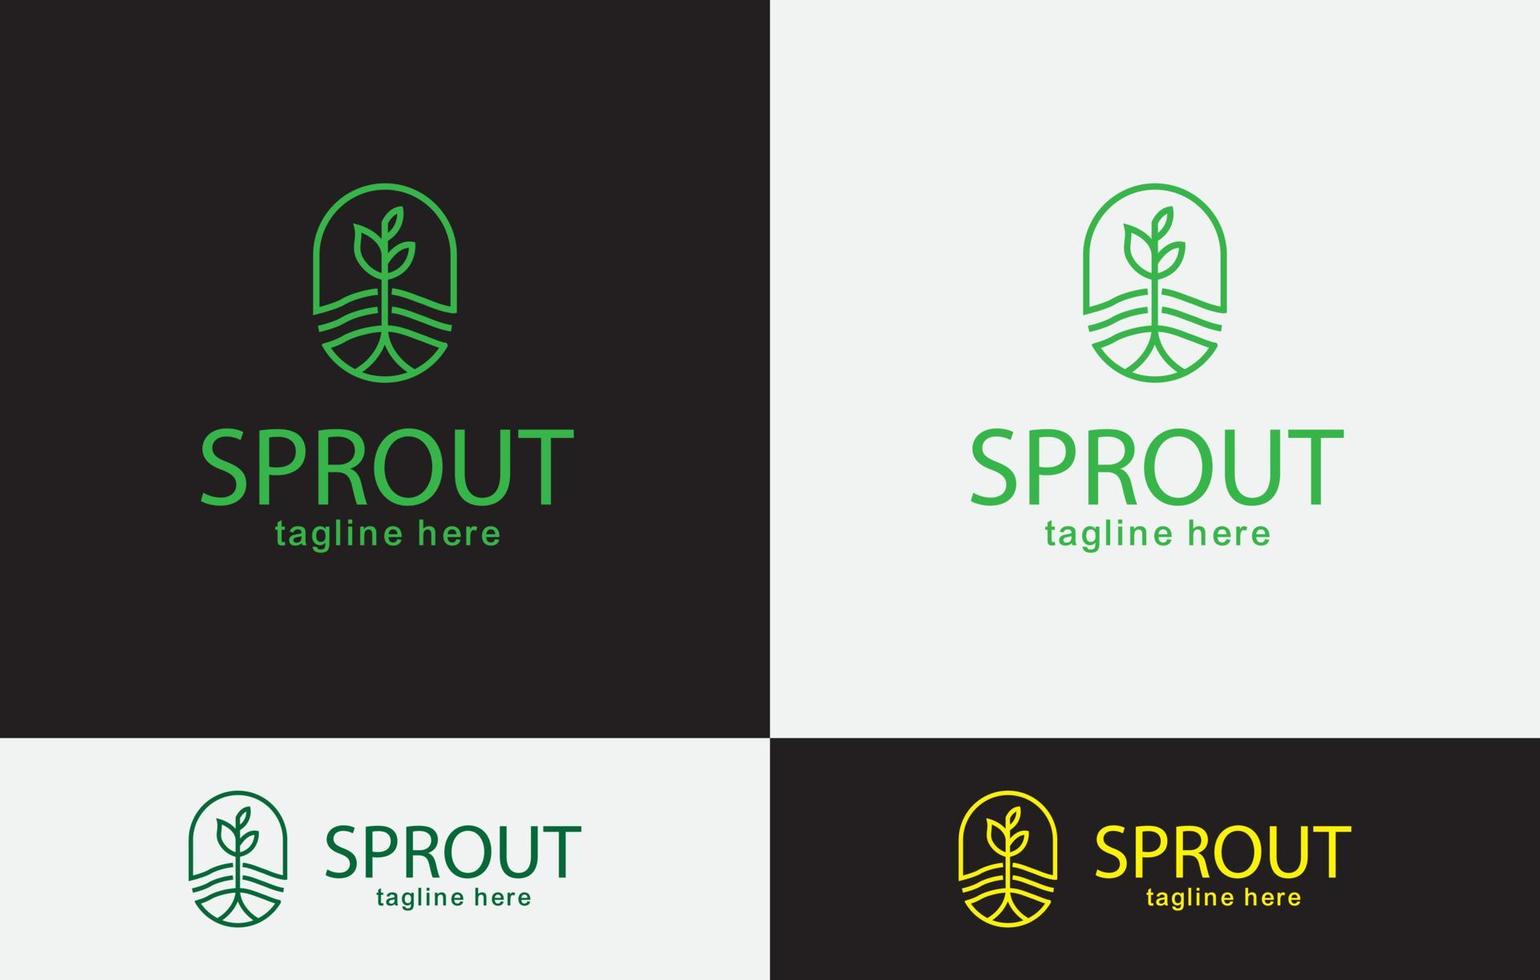 Sprout Logo Design vector art eps